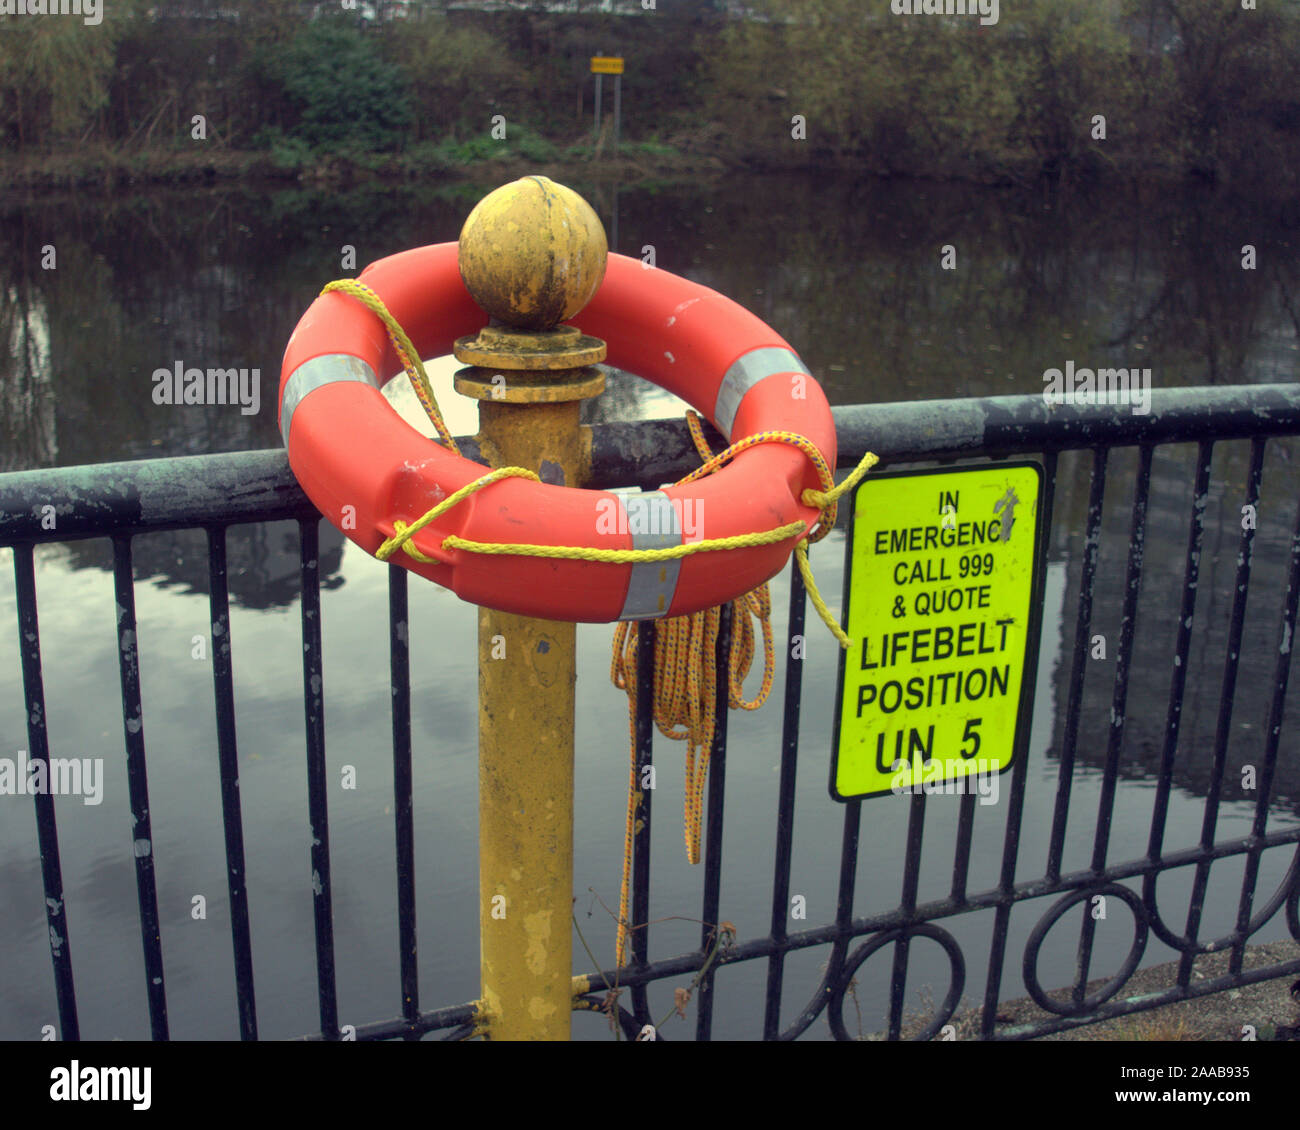 Fluss Clyde Rettungsring Rettungsring nach Warnungen der gestohlenen eine Gefahr für die lebensrettende Warnhinweise mutwillig zerstört oder ausgegeben wurden und die Kampagne begann am Fluss entlang Stockfoto